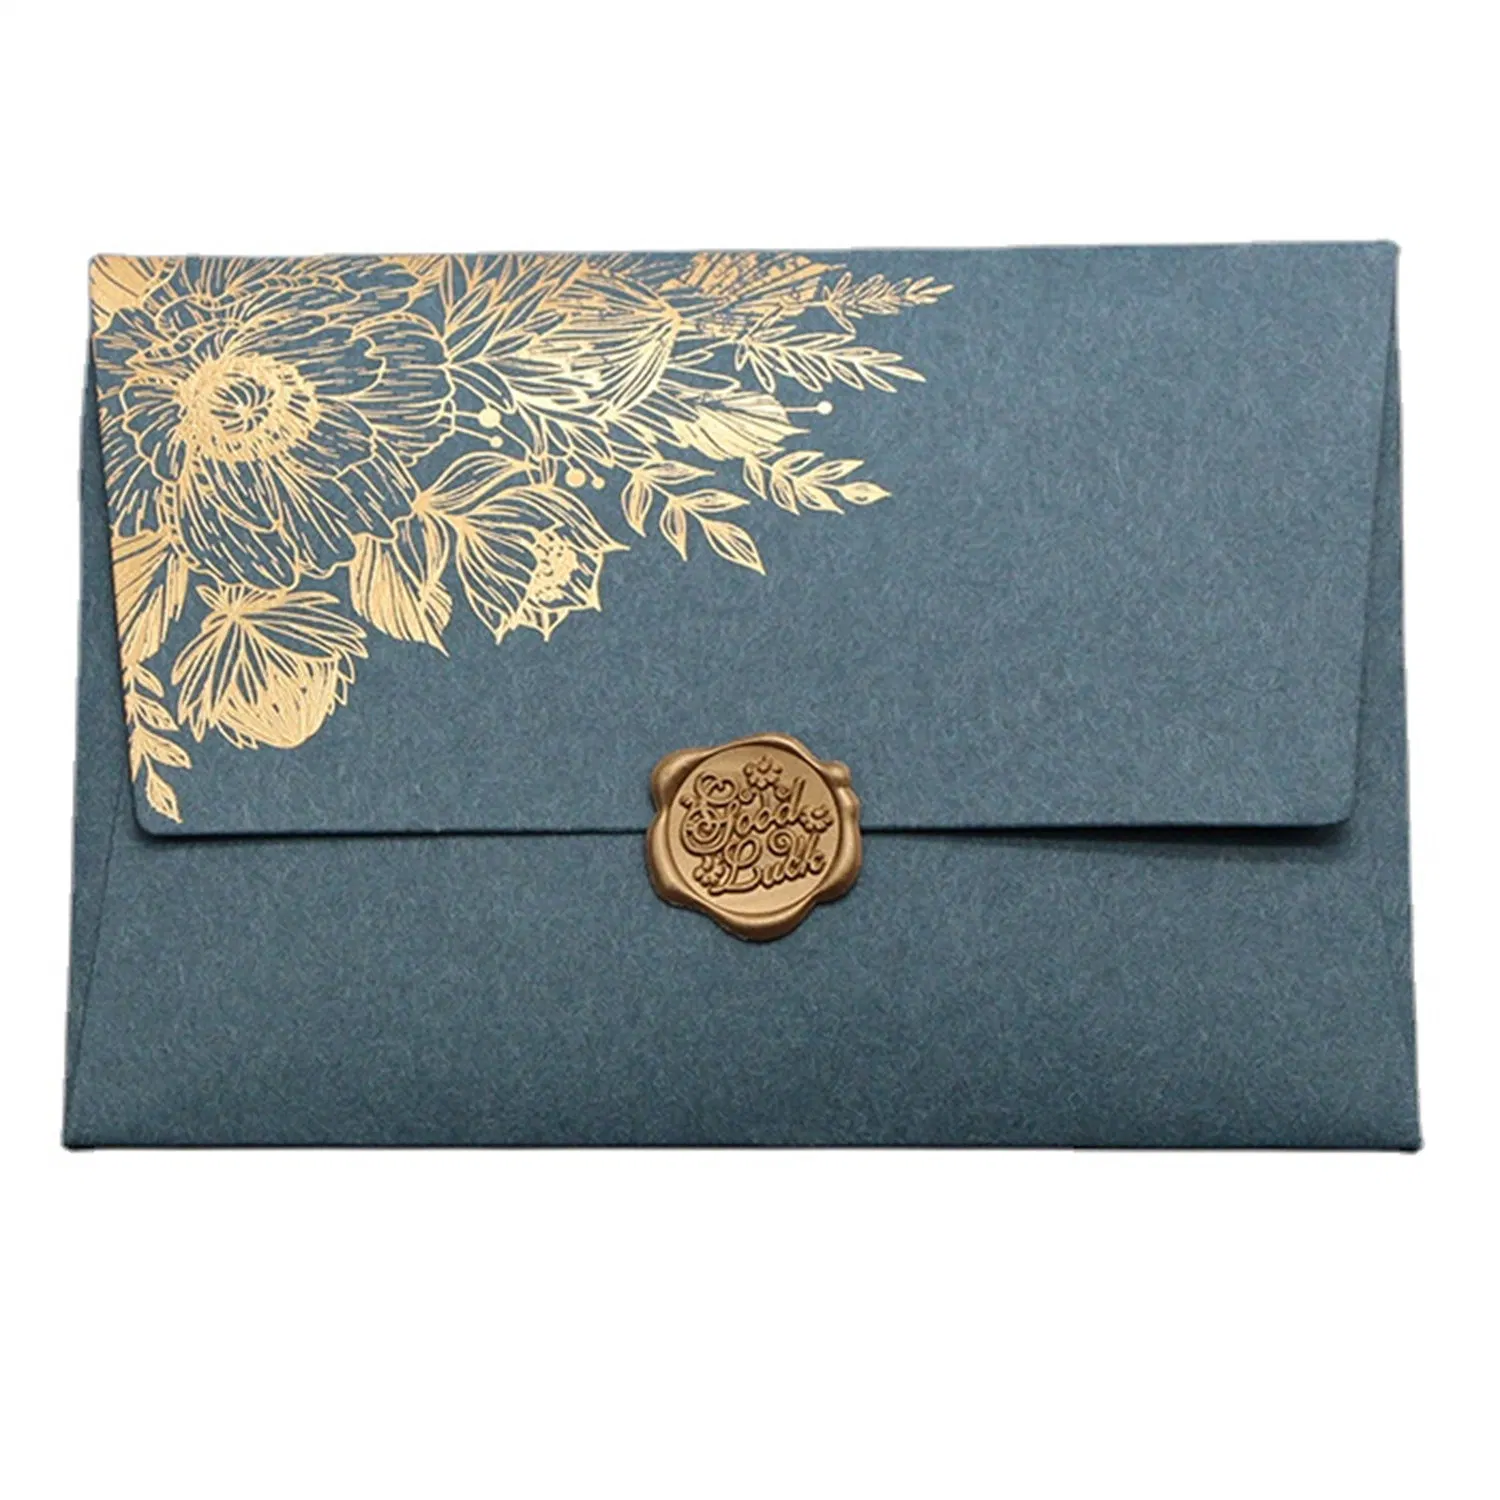 Hot Stamping Special Paper Envelope Packaging Card Invitation Letter Envelope Bag